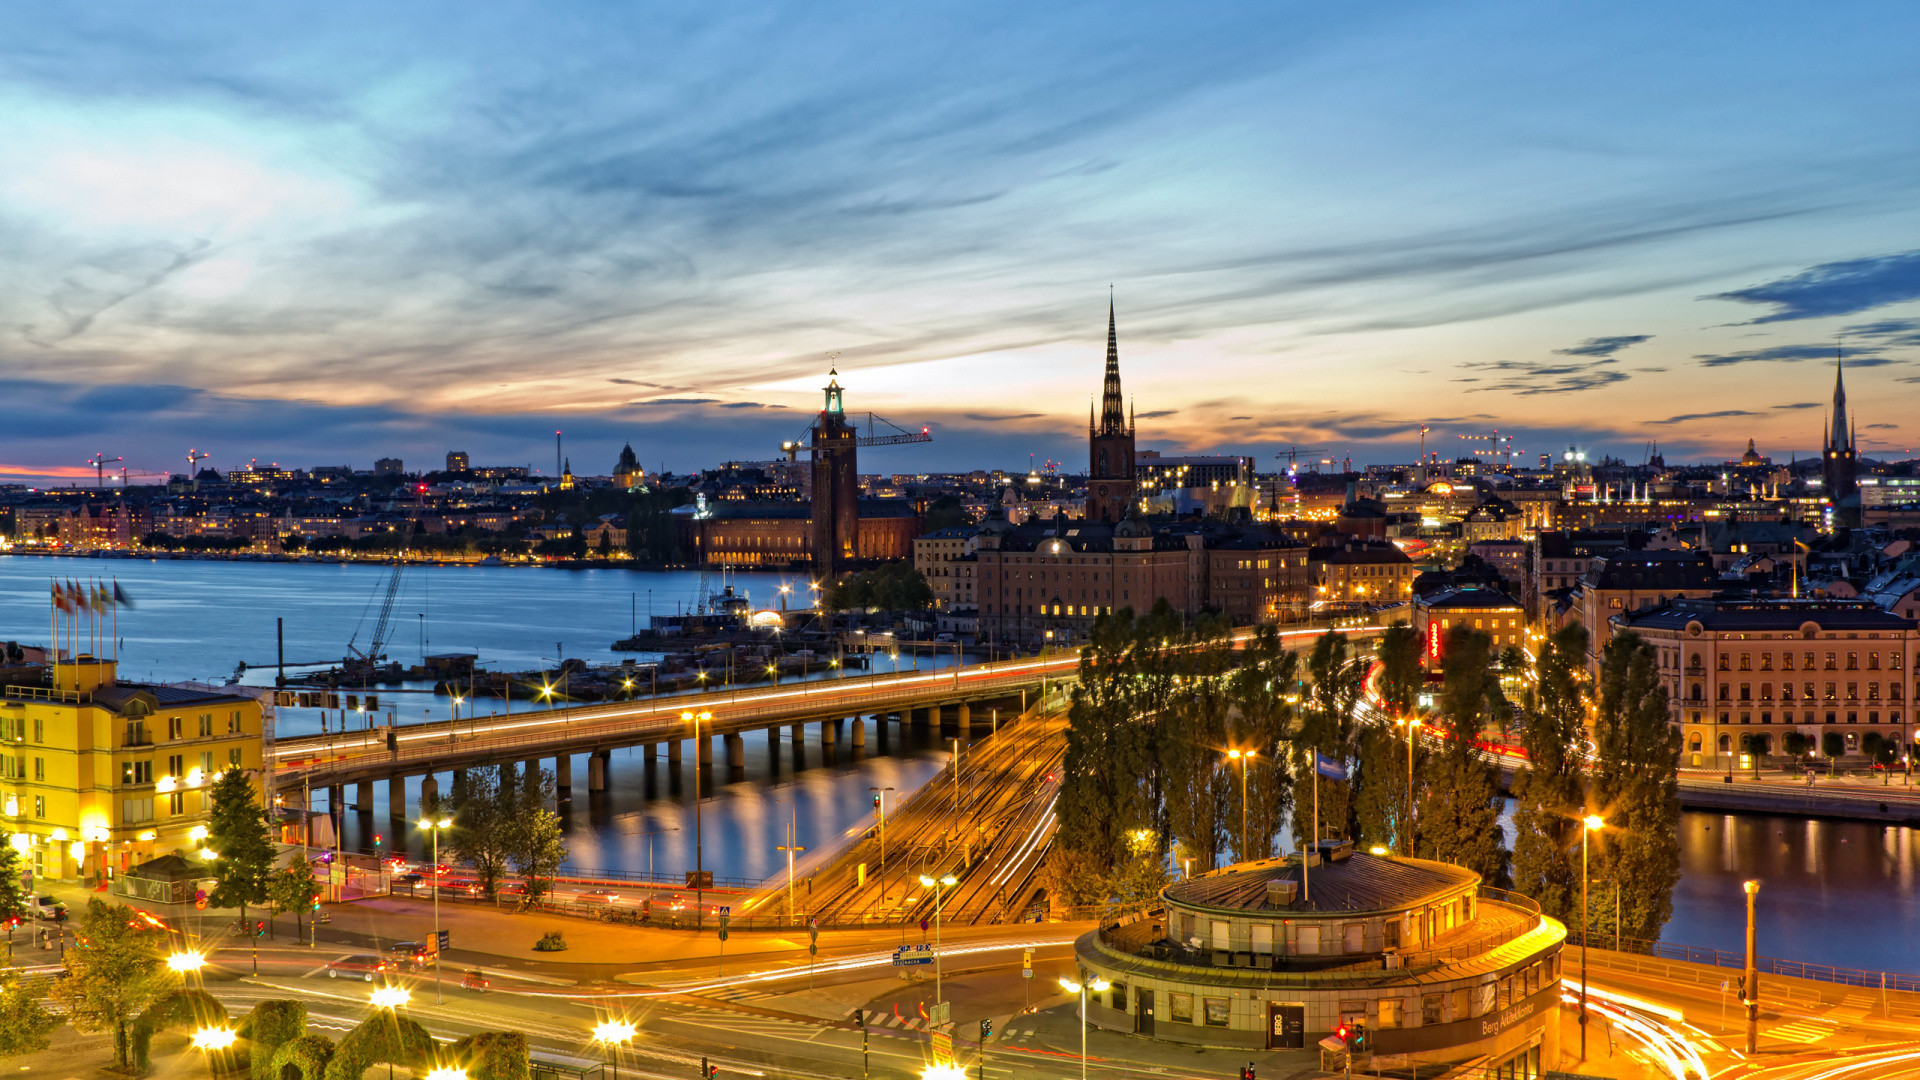 斯德哥尔摩, 城市景观, 城市, 里程碑, 晚上 壁纸 1920x1080 允许